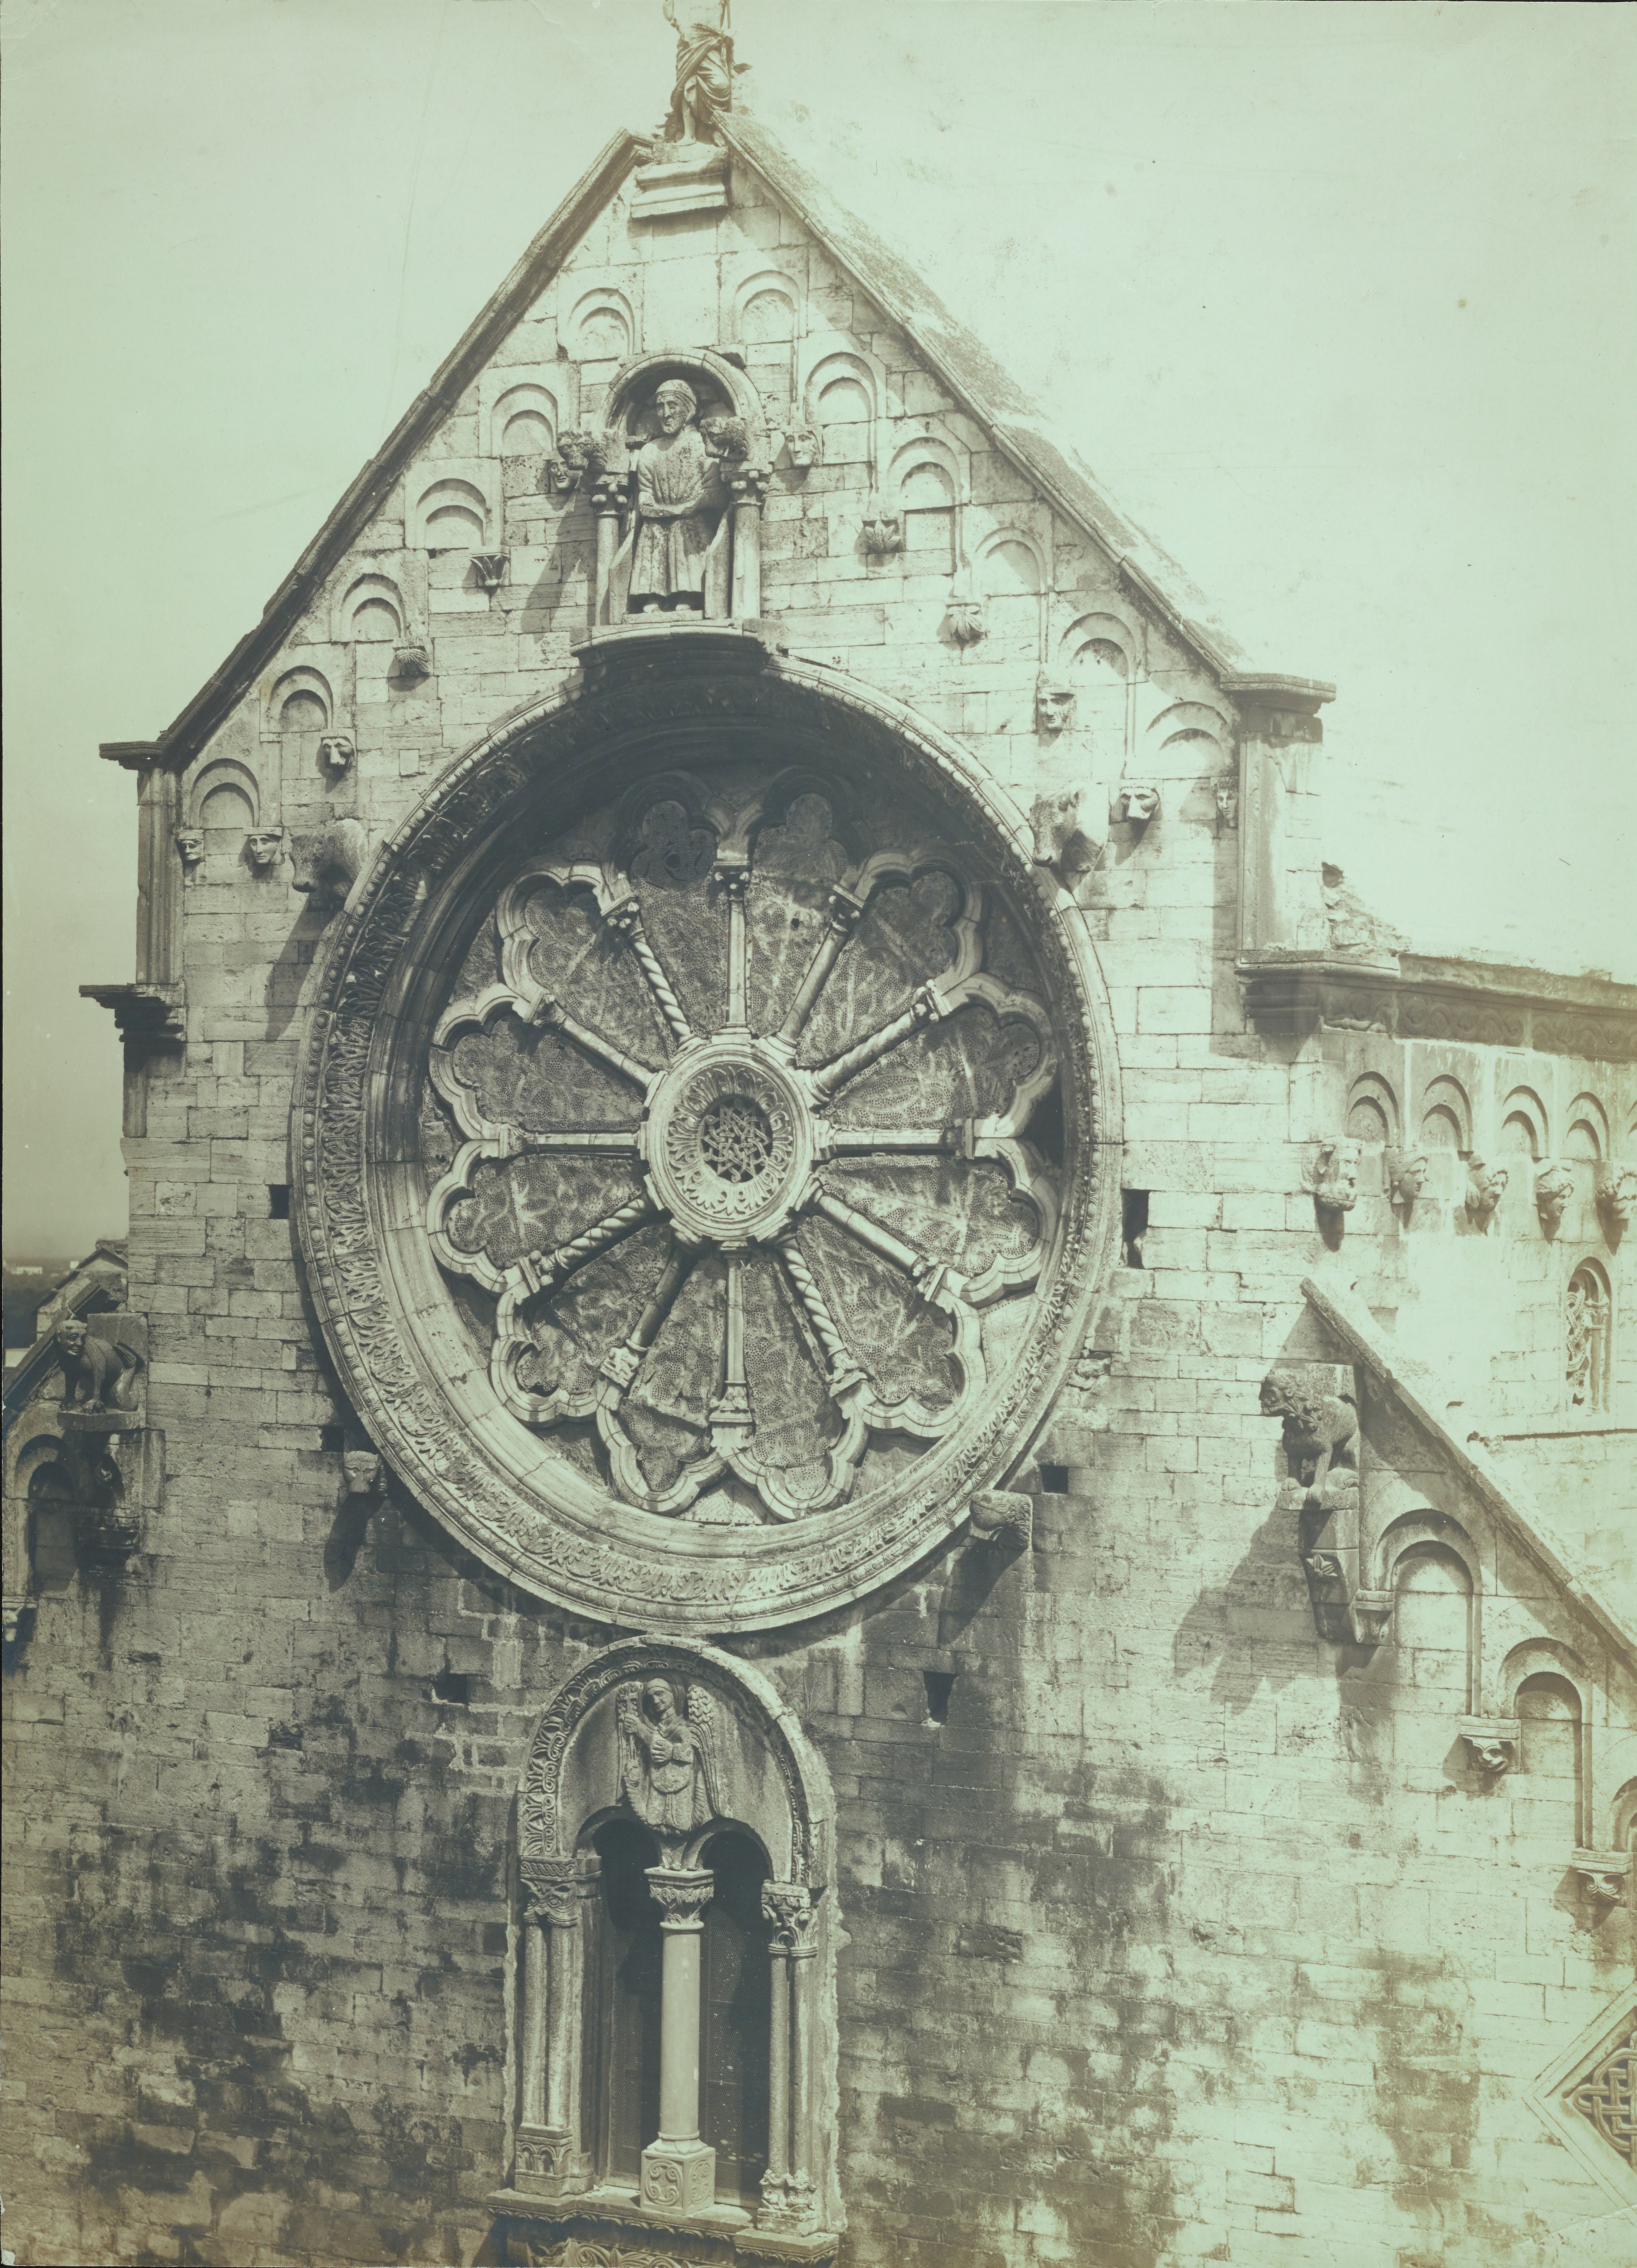 Fotografo non identificato, Ruvo di Puglia - Cattedrale S. Maria Assunta, rosone e bifora, 1901-1925,  gelatina ai sali d'argento/carta, MPI6091652